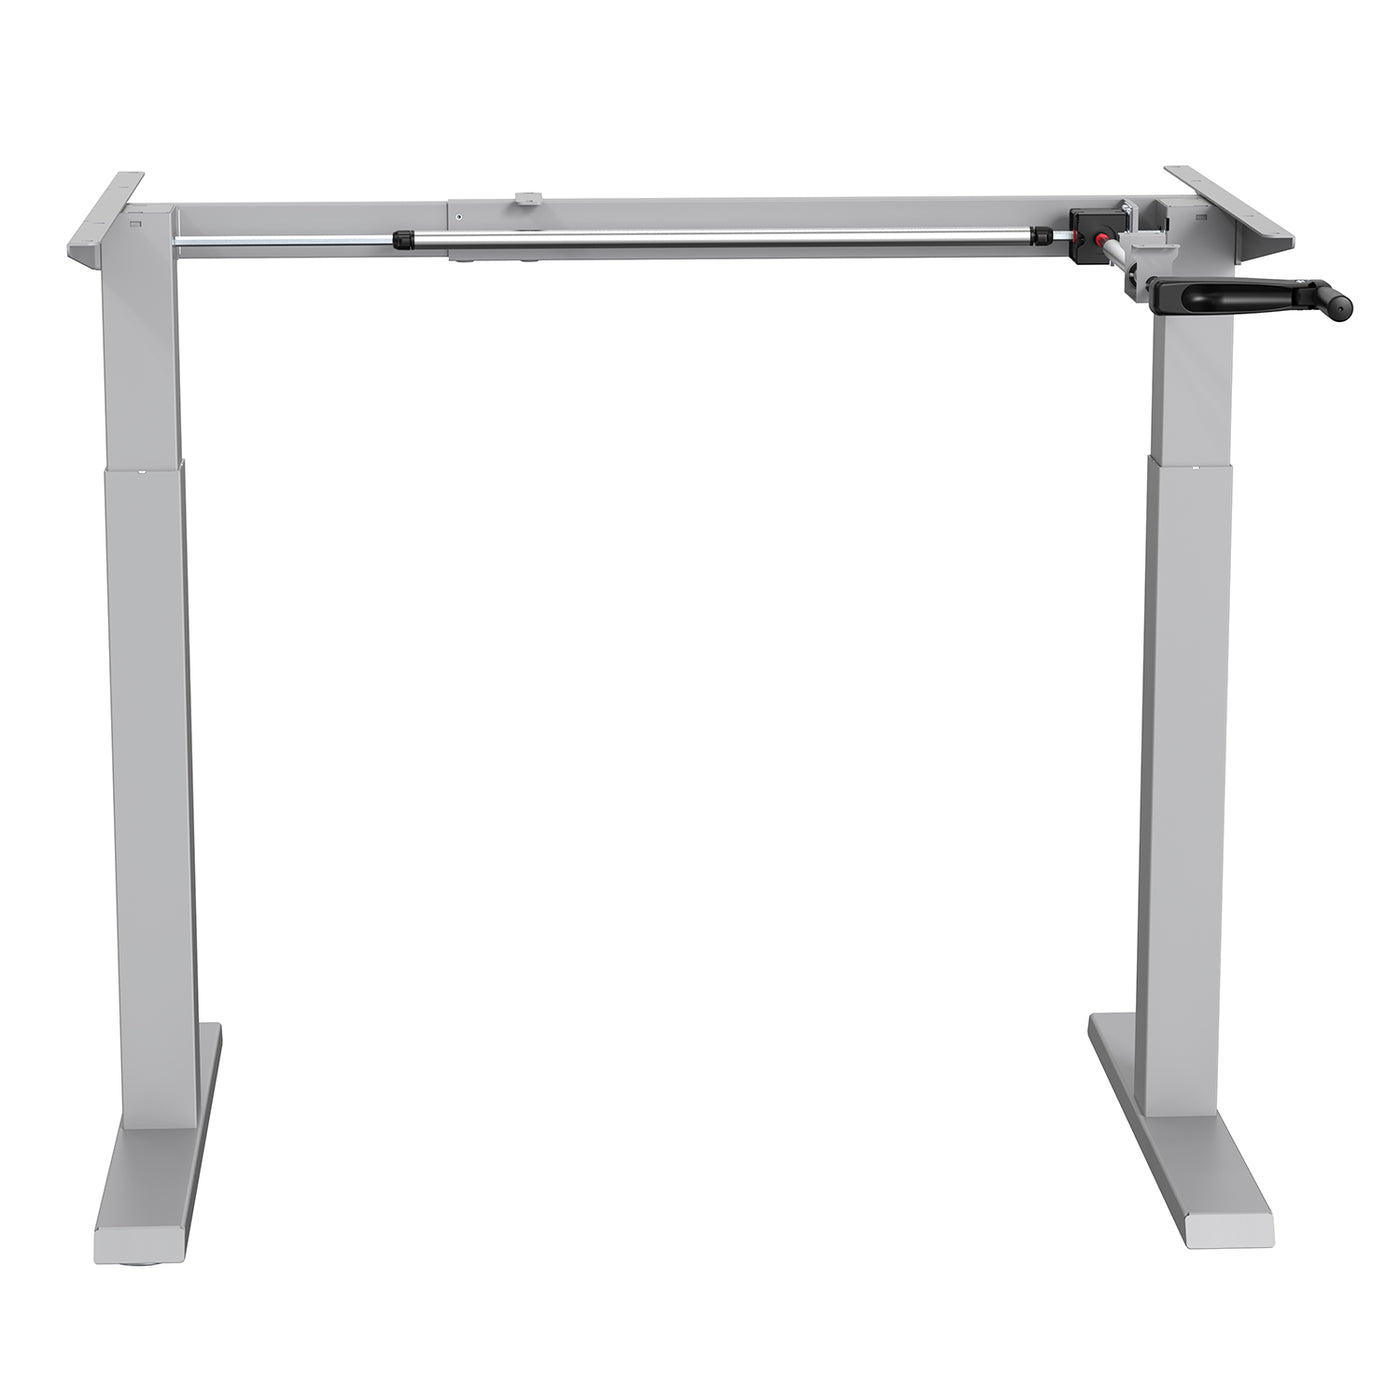 Ergo Office ER-402G Manuell höhenverstellbarer Schreibtisch Tischgestell ohne Platte für Steh- und Sitzarbeiten grau